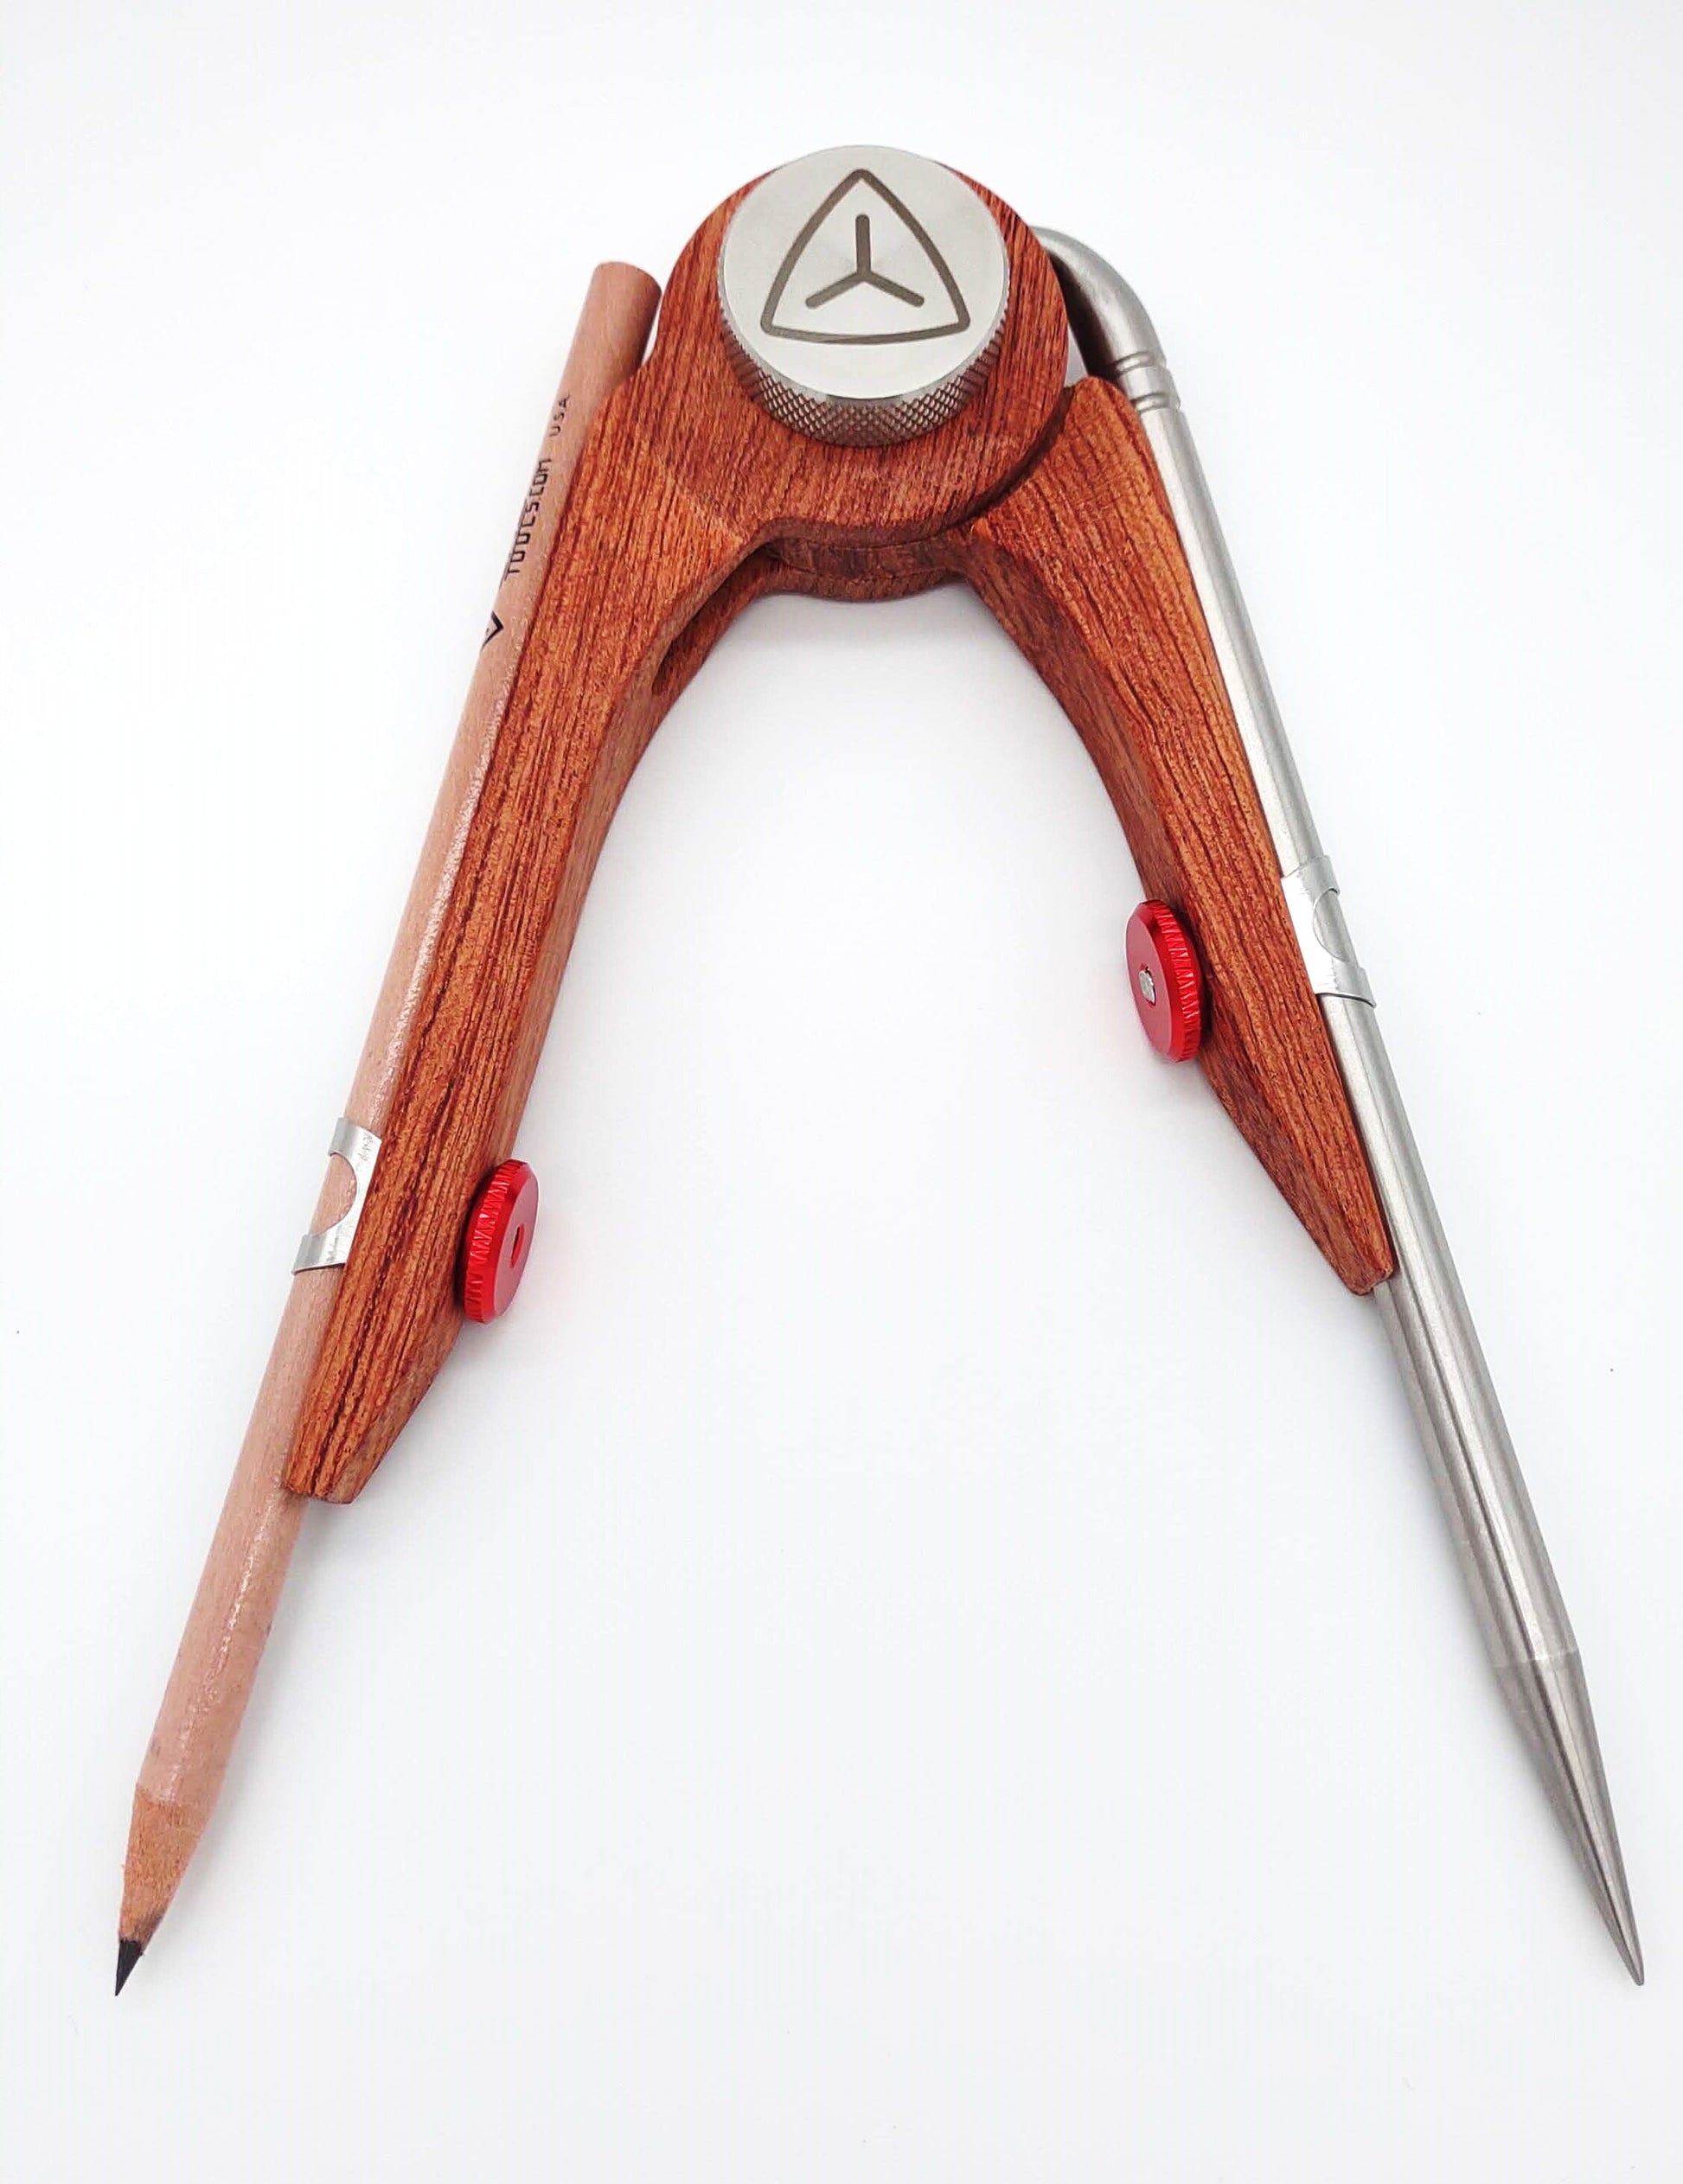 Yerg Tools Skrȳb - Rosewood Scribe Tool